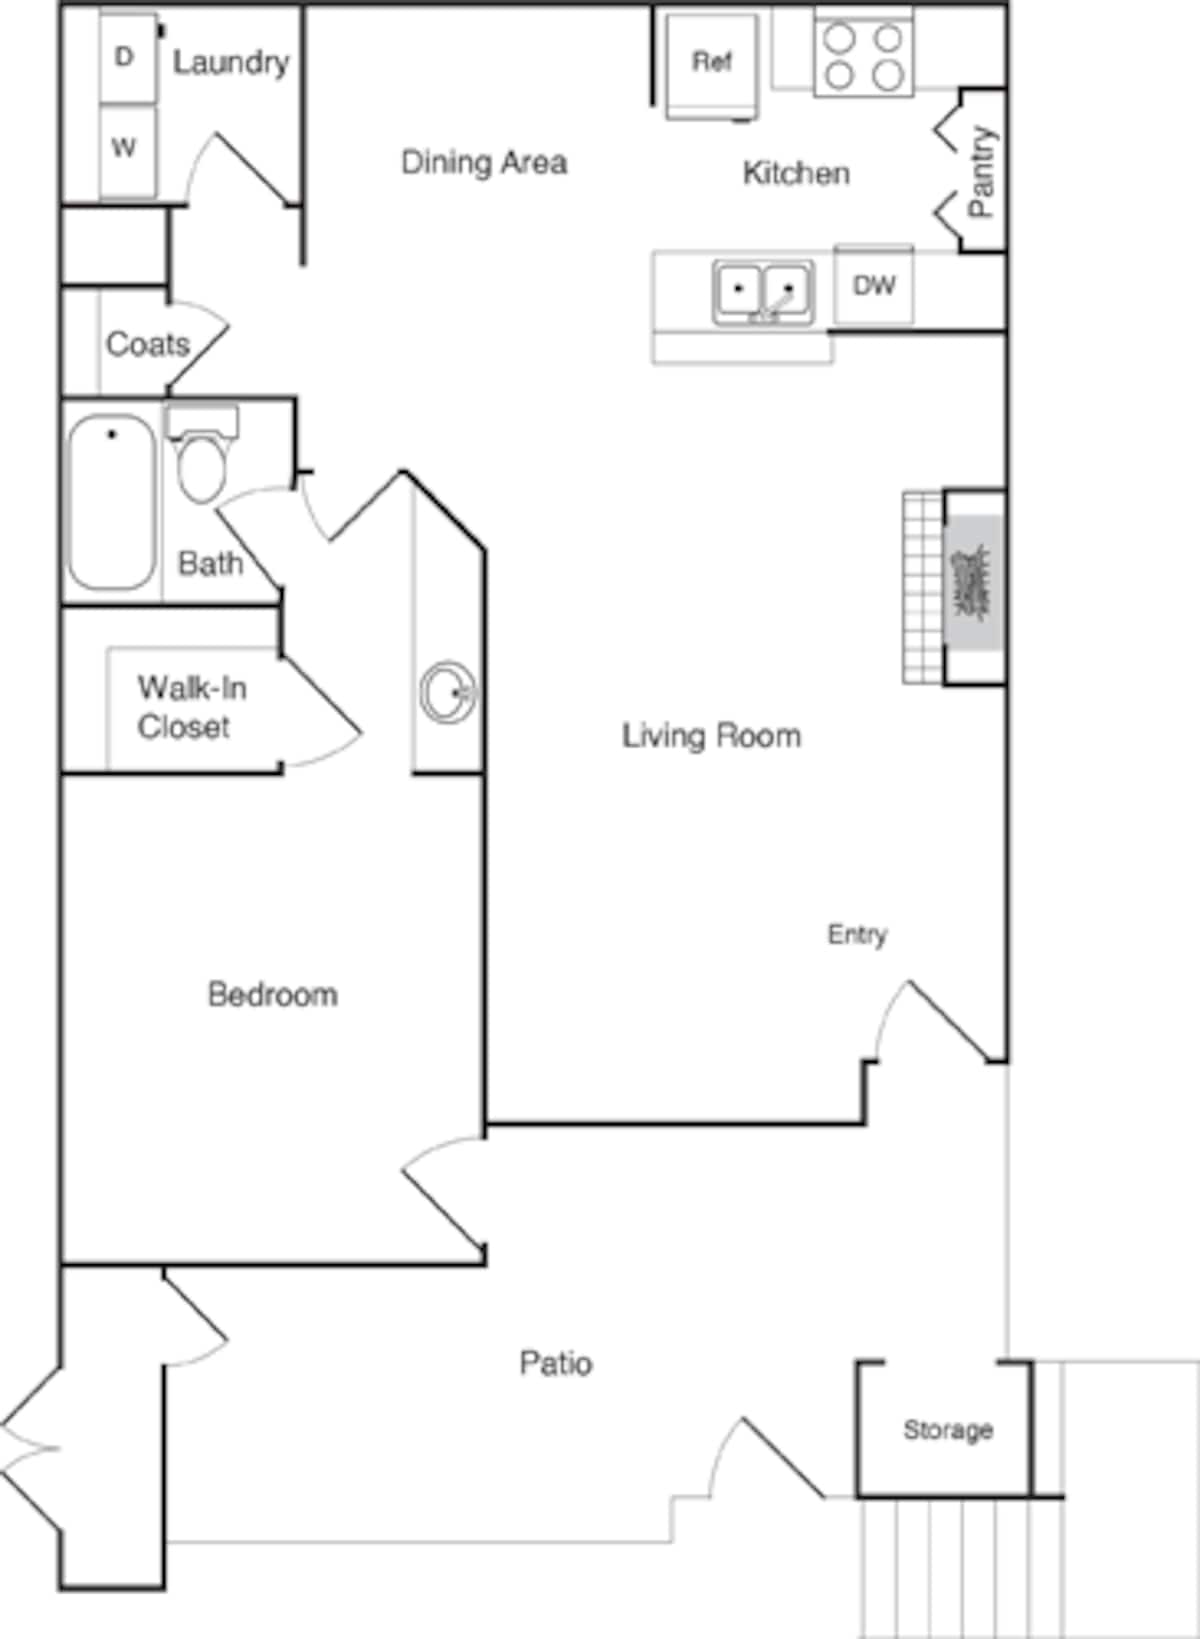 Floorplan diagram for Model 1C, showing 1 bedroom